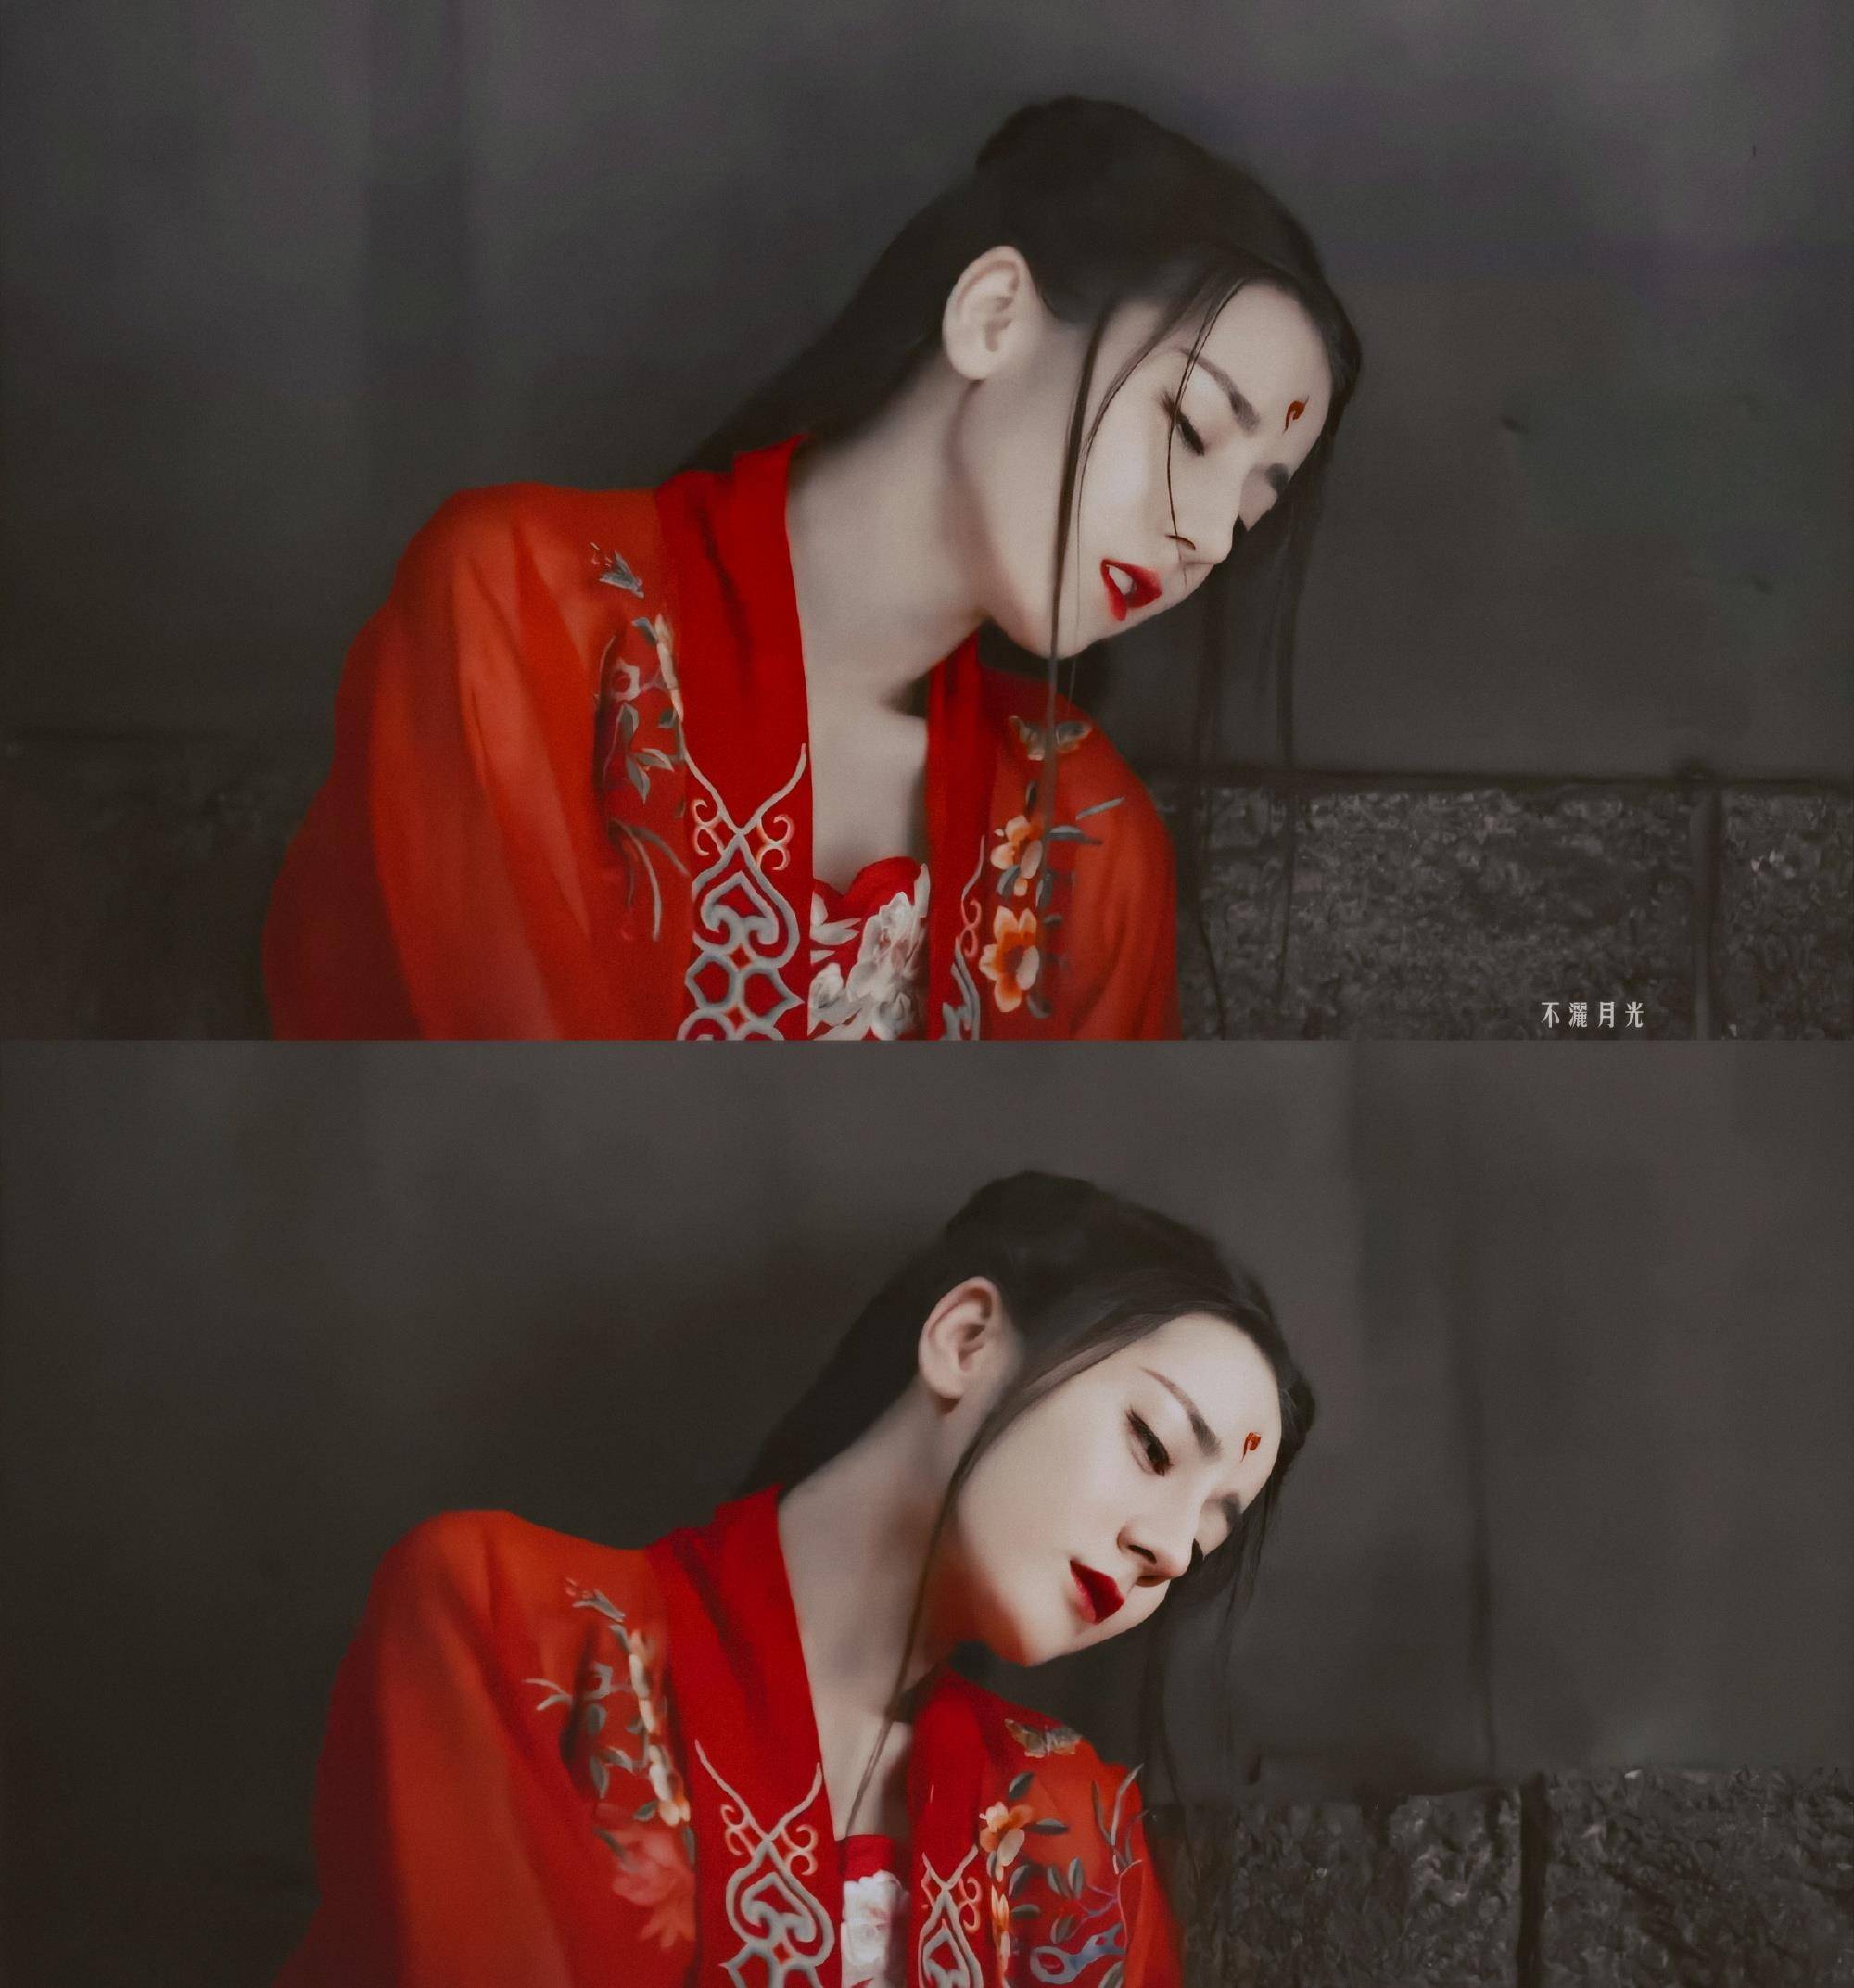 原创迪丽热巴的红衣古装造型,白凤九,烈如歌,狐妖小红娘,都好美啊